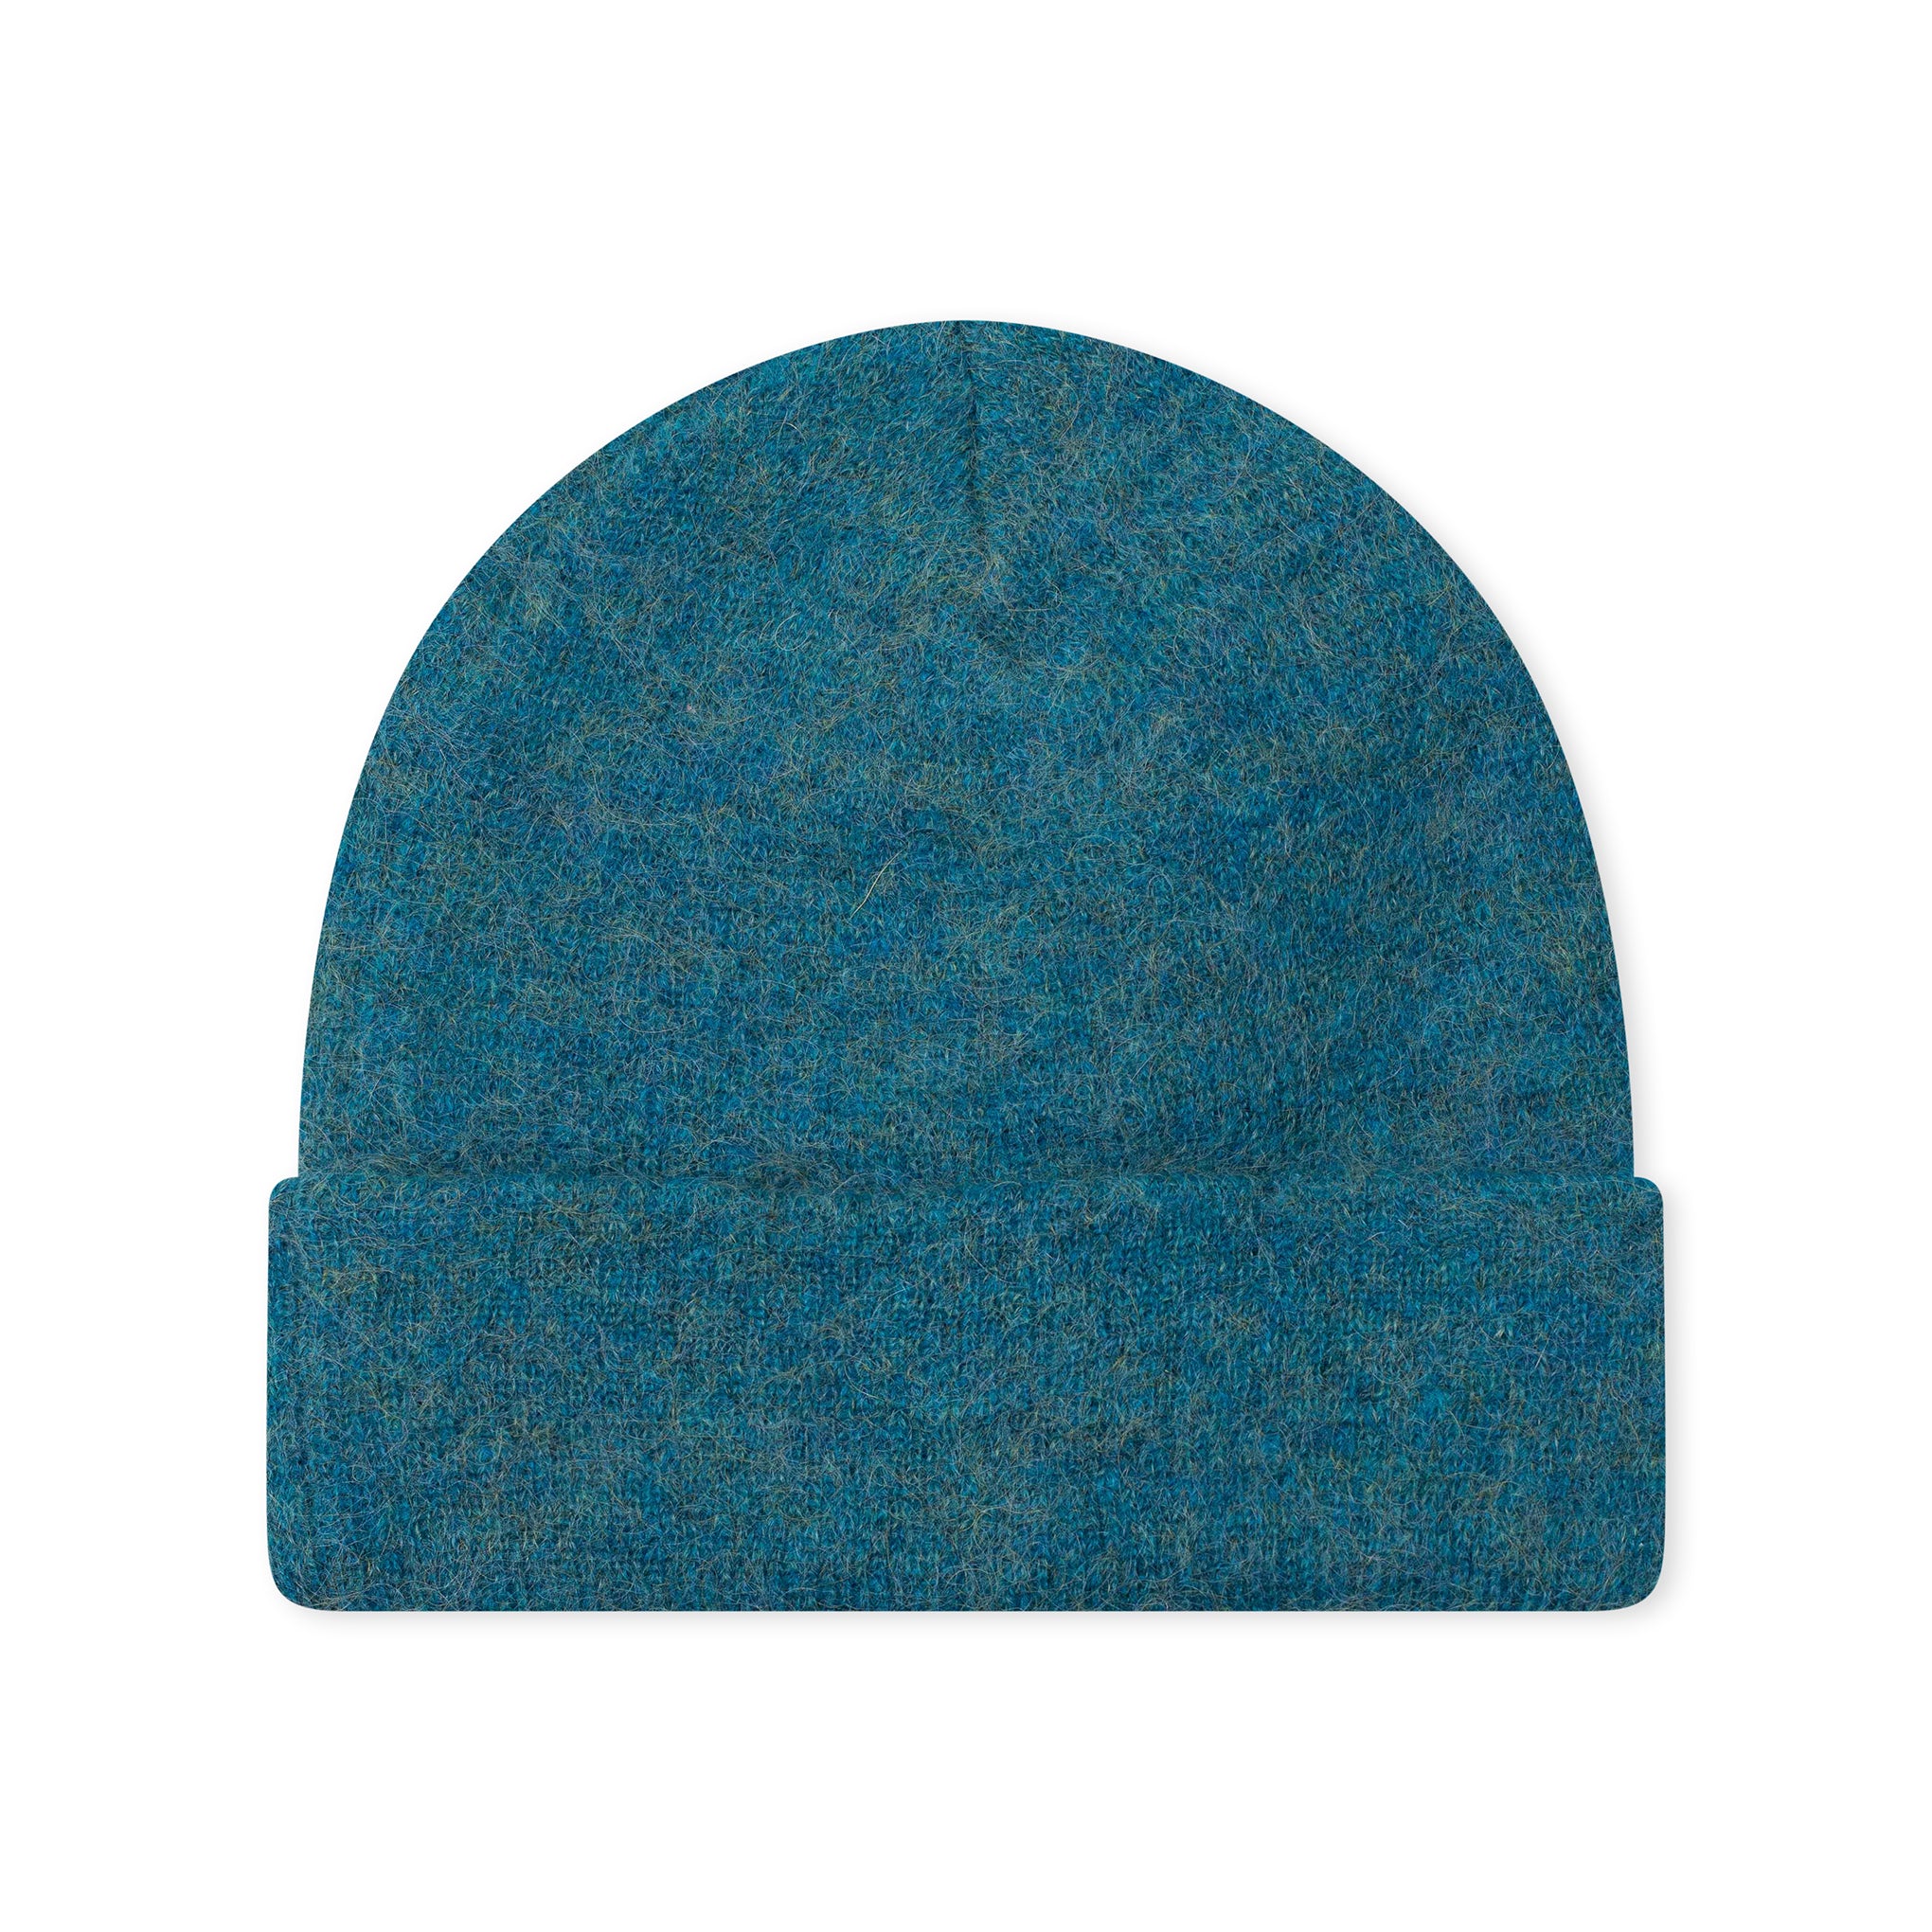 高级马海毛毛线帽 青色 (FW16)